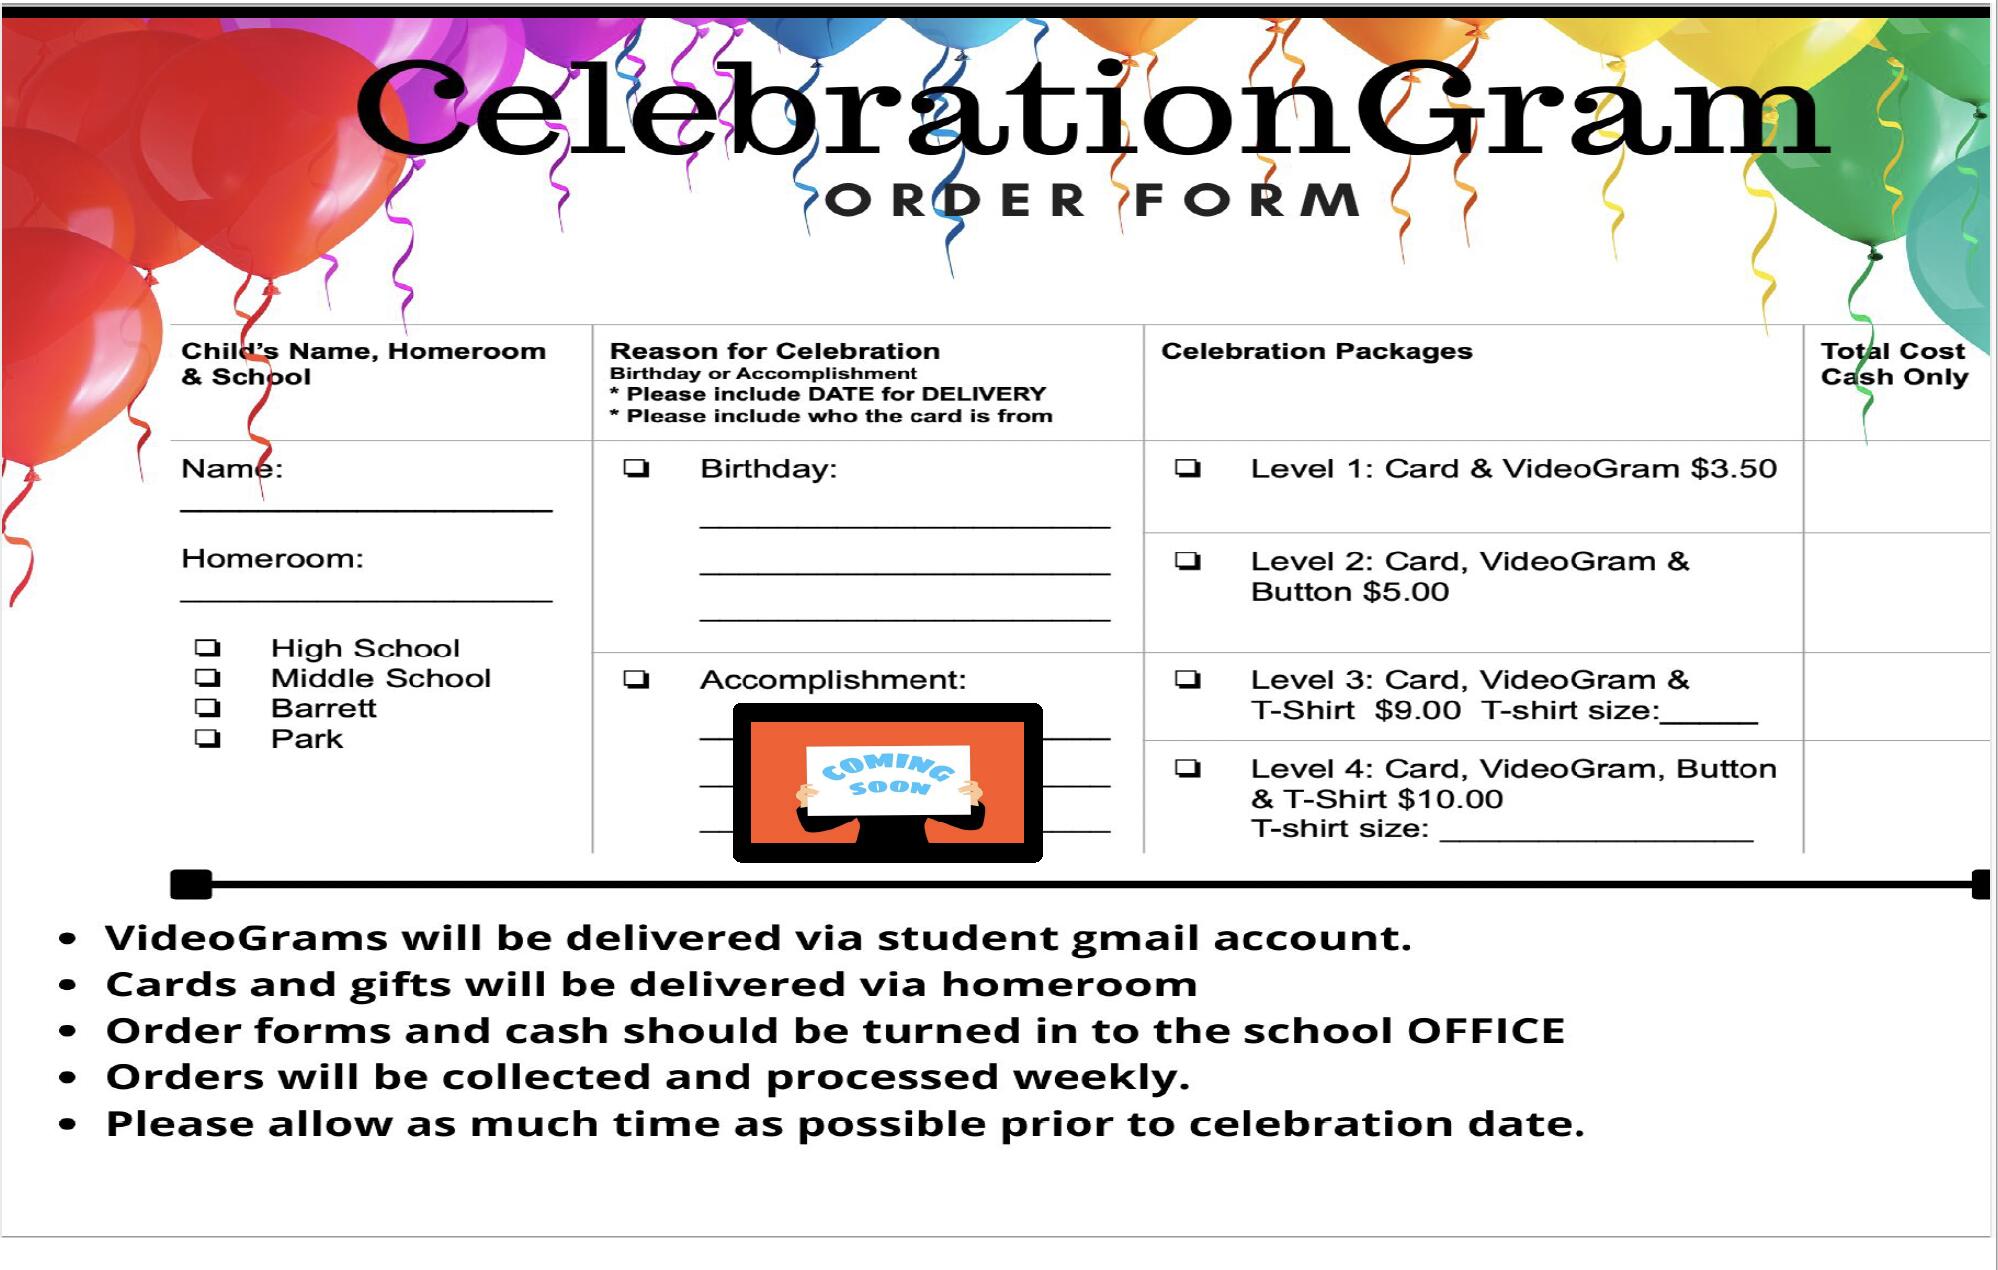 Celebration Gram Order Form